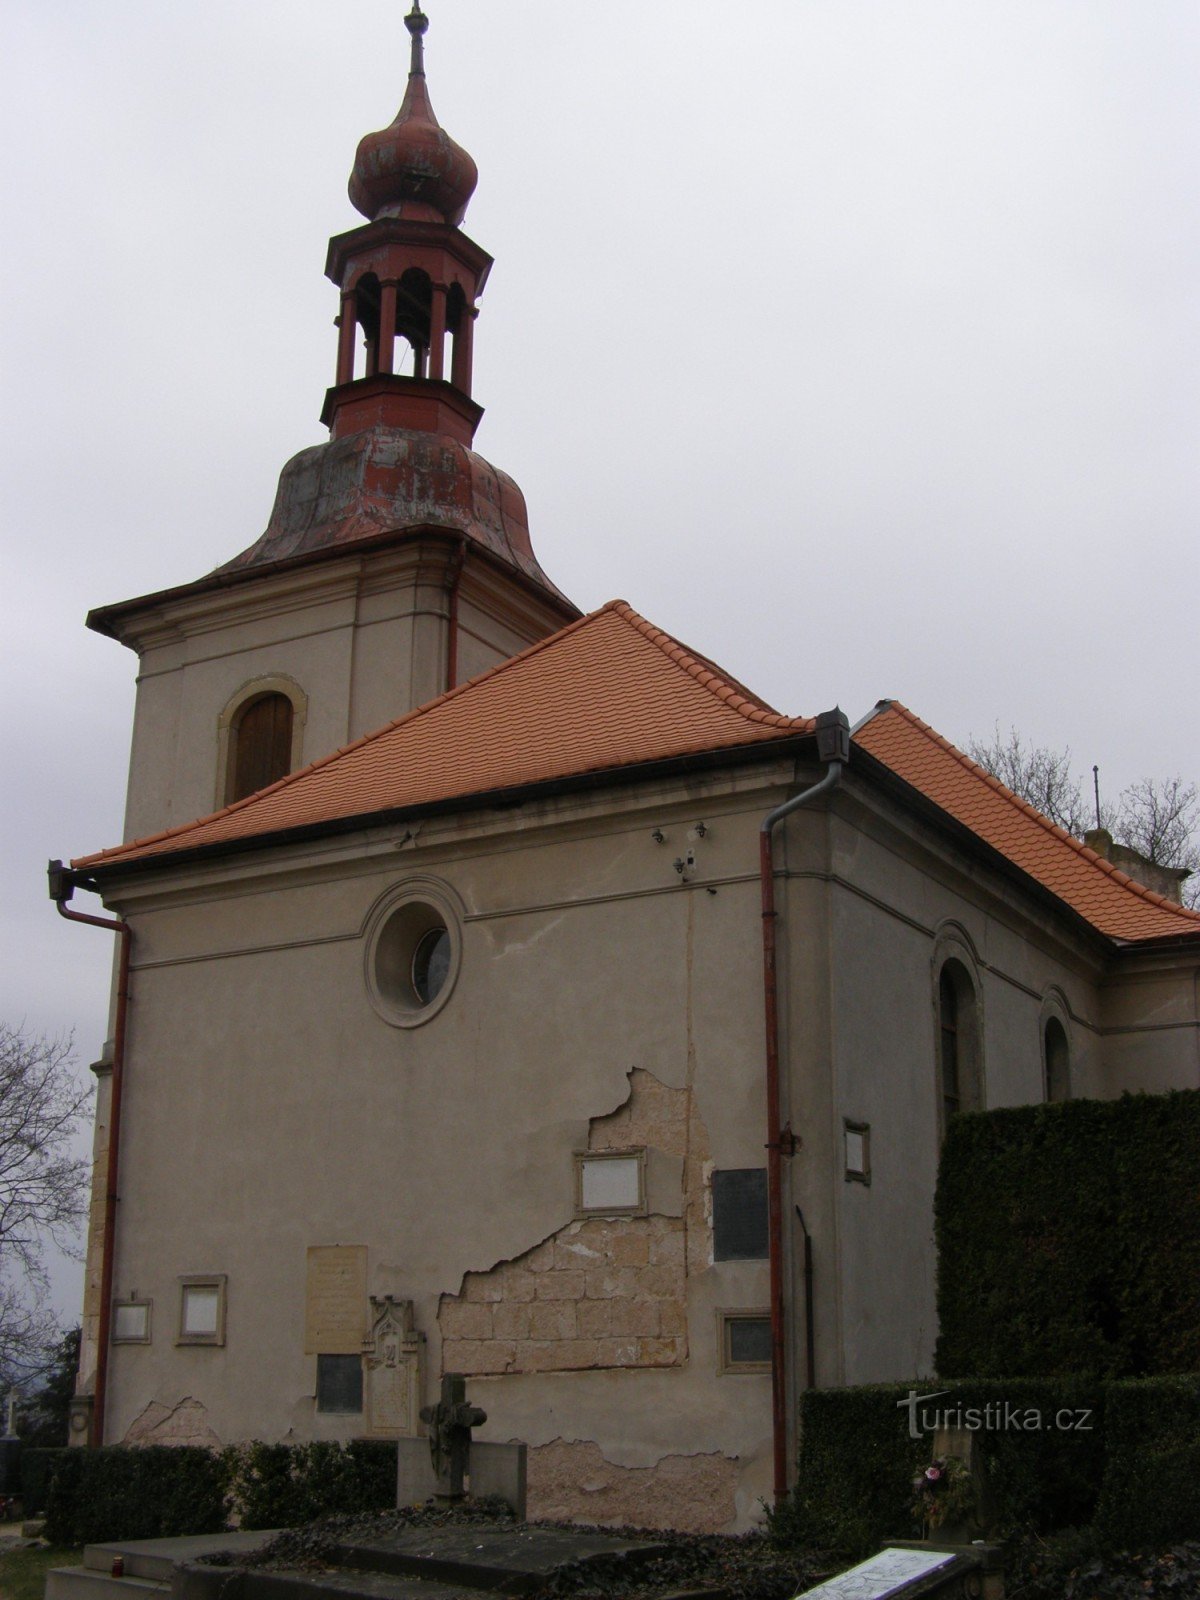 Gothard - Igreja de St. Gothard